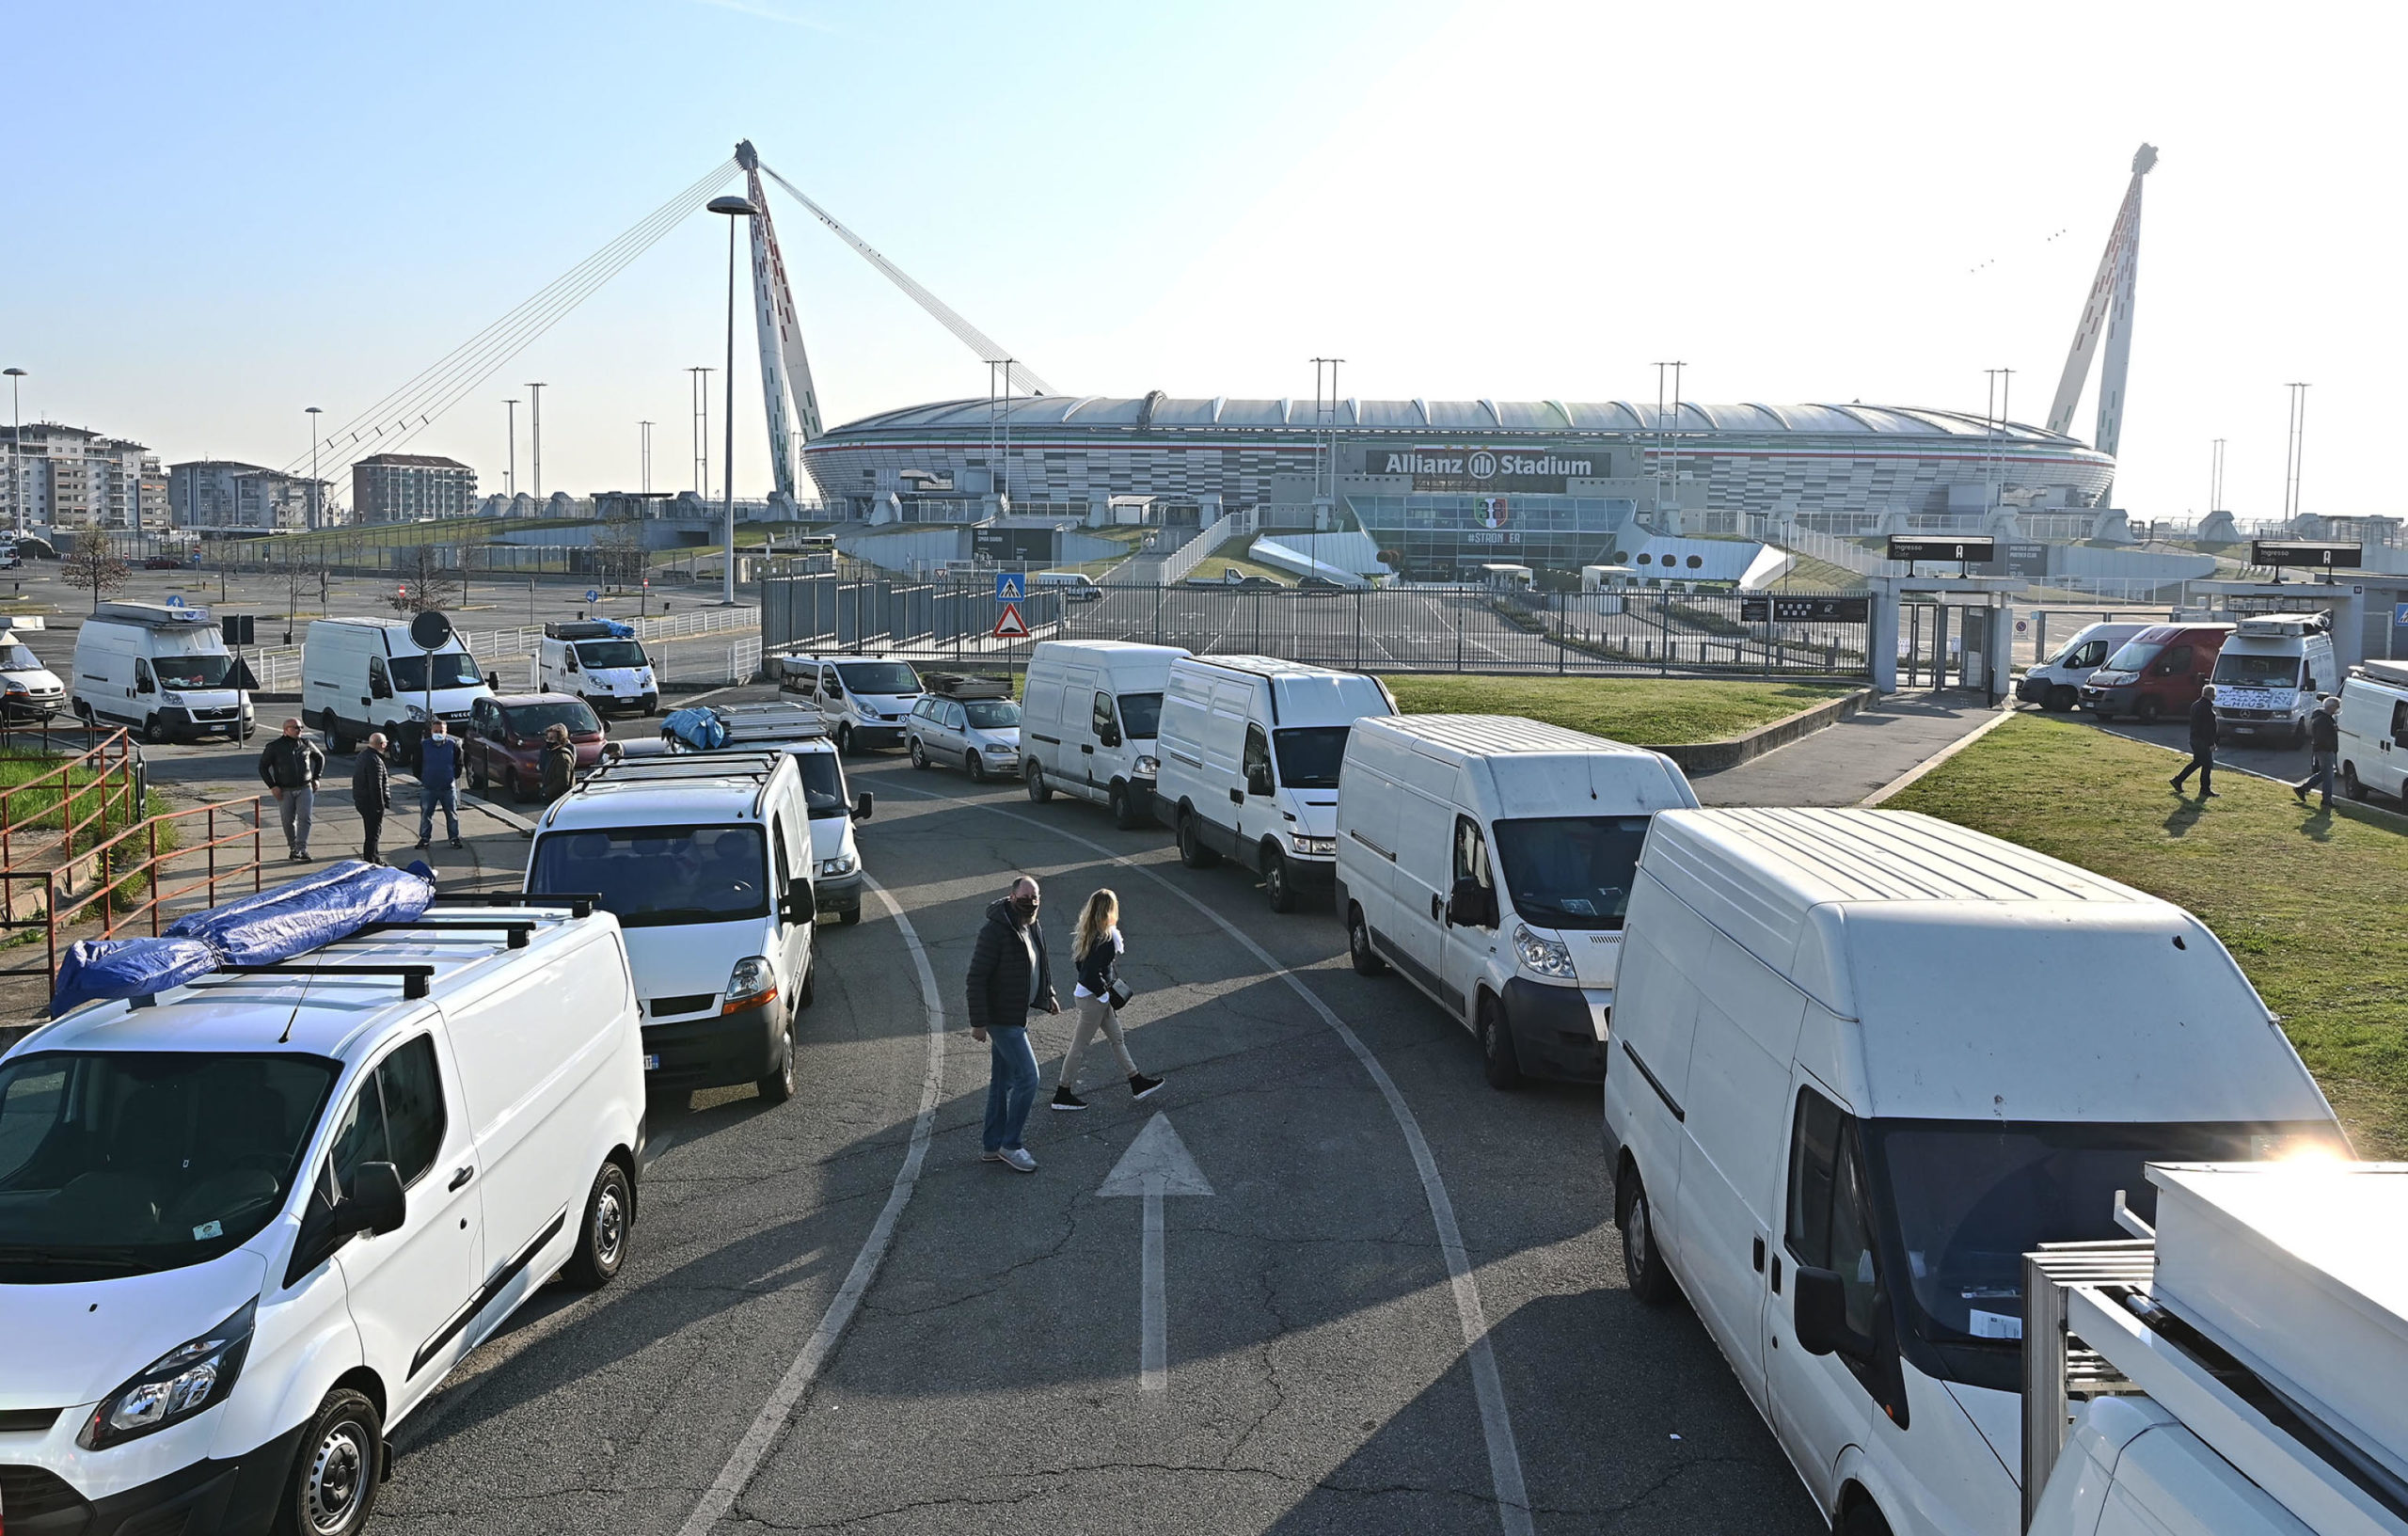 La coda di furgoni davanti all'Allianz Stadium